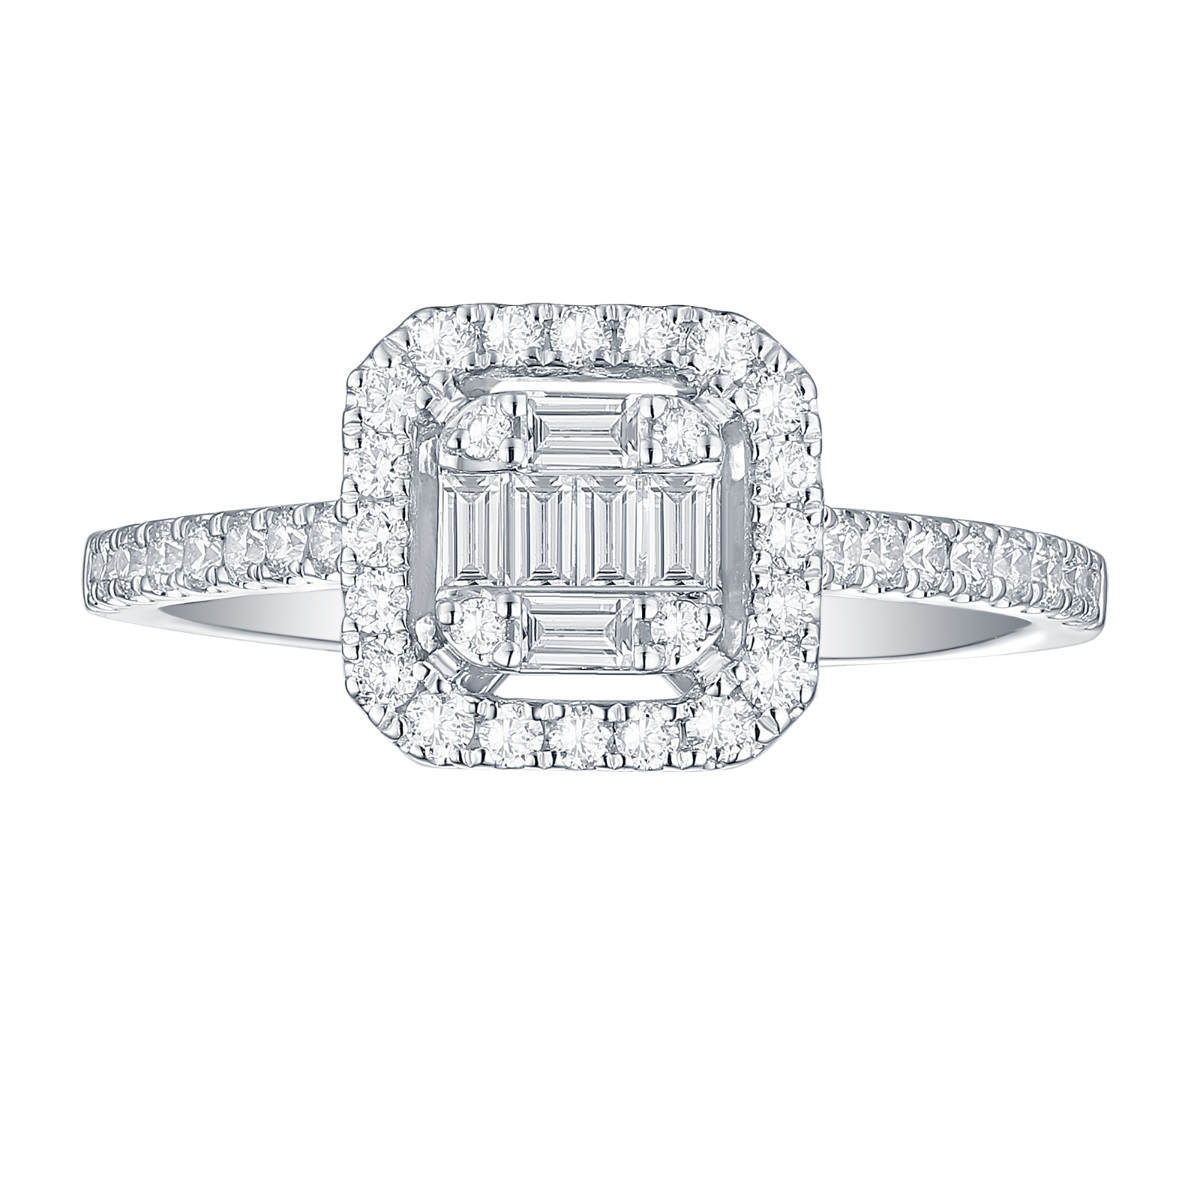 R35085WHT – 18K White Gold Diamond Ring, 0.51 TCW